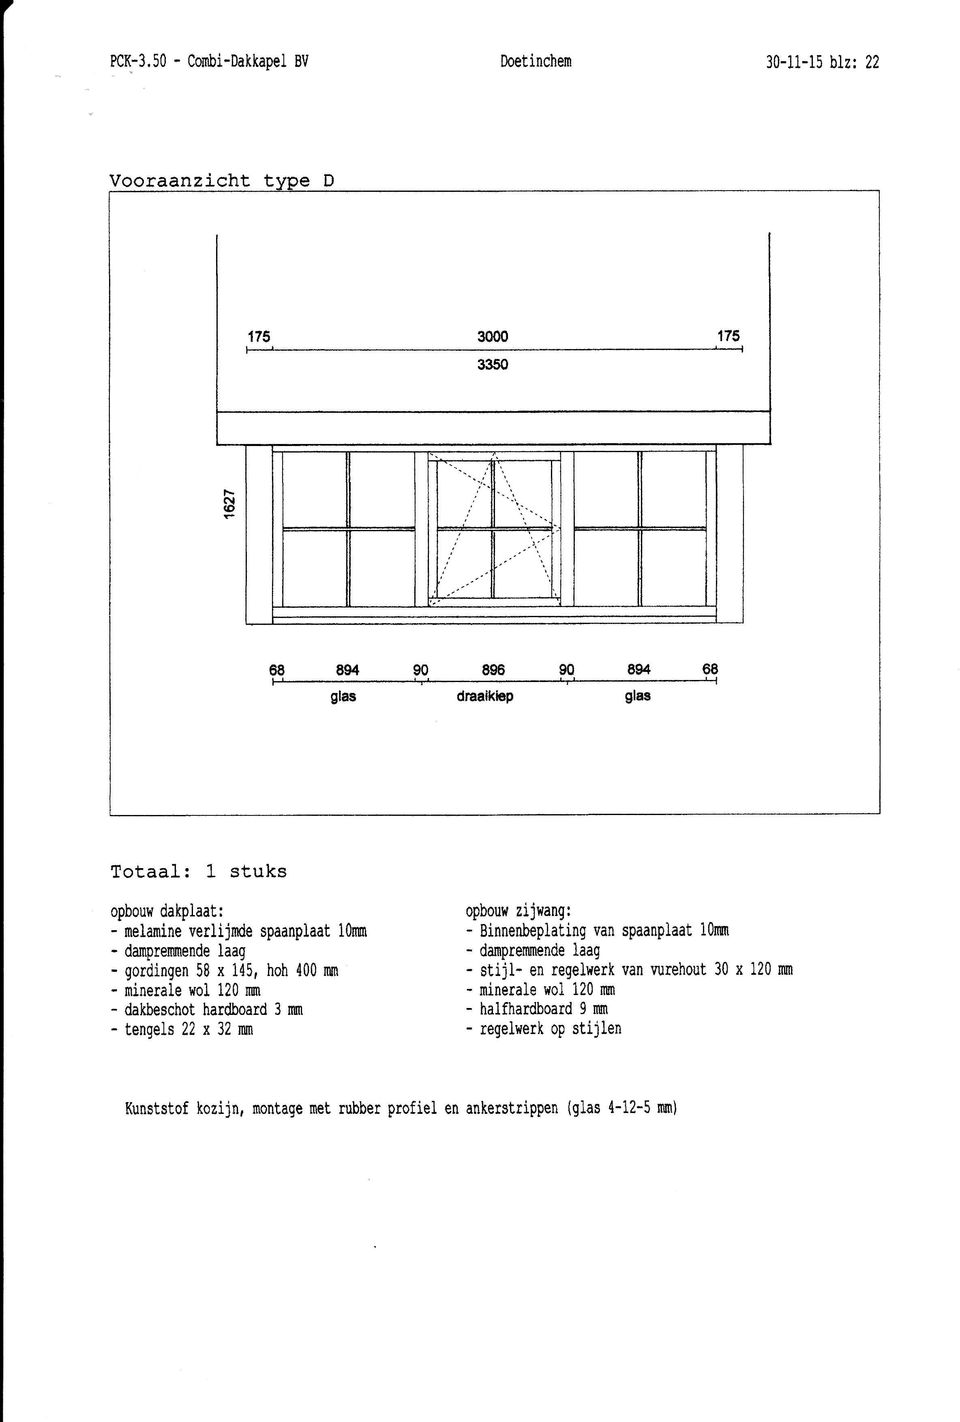 dakplaat; opbouw zijwang: - nrelamine verlijde spaanplaat i0nur - Binnenheplating van spaatplaat i&mi - damprmnende laag - damprerueende laag -